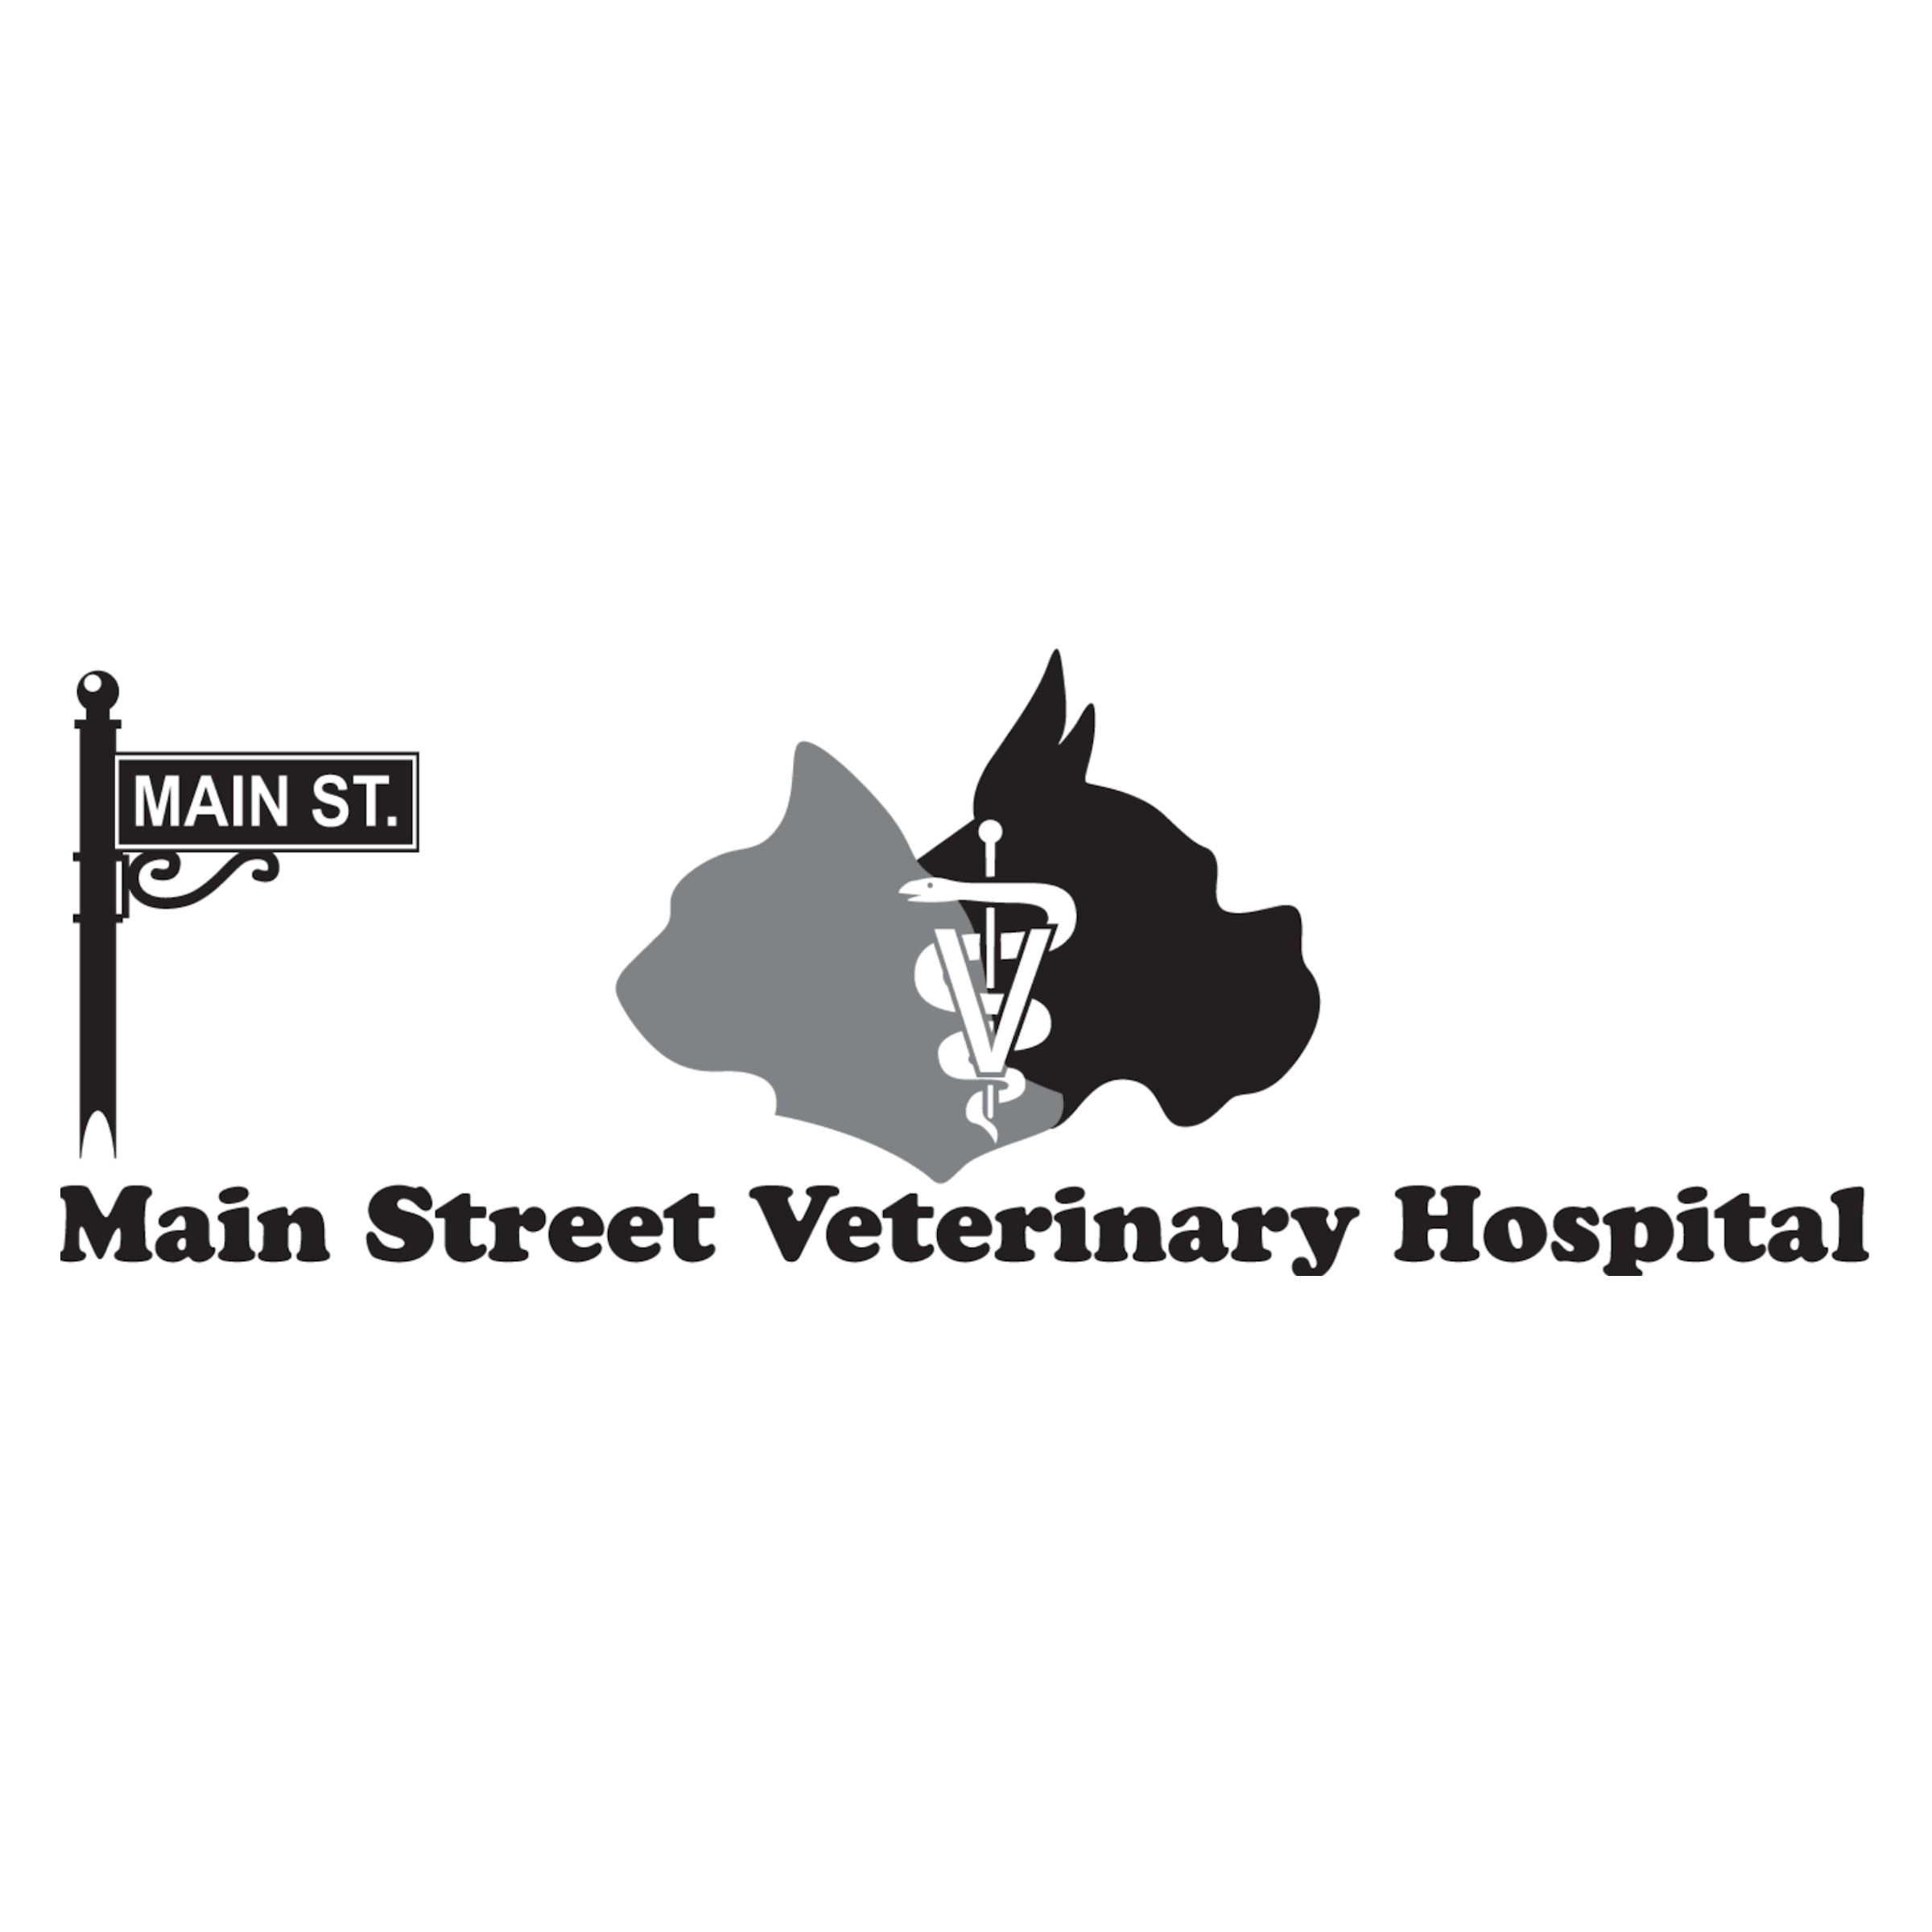 Main Street Veterinary Hospital